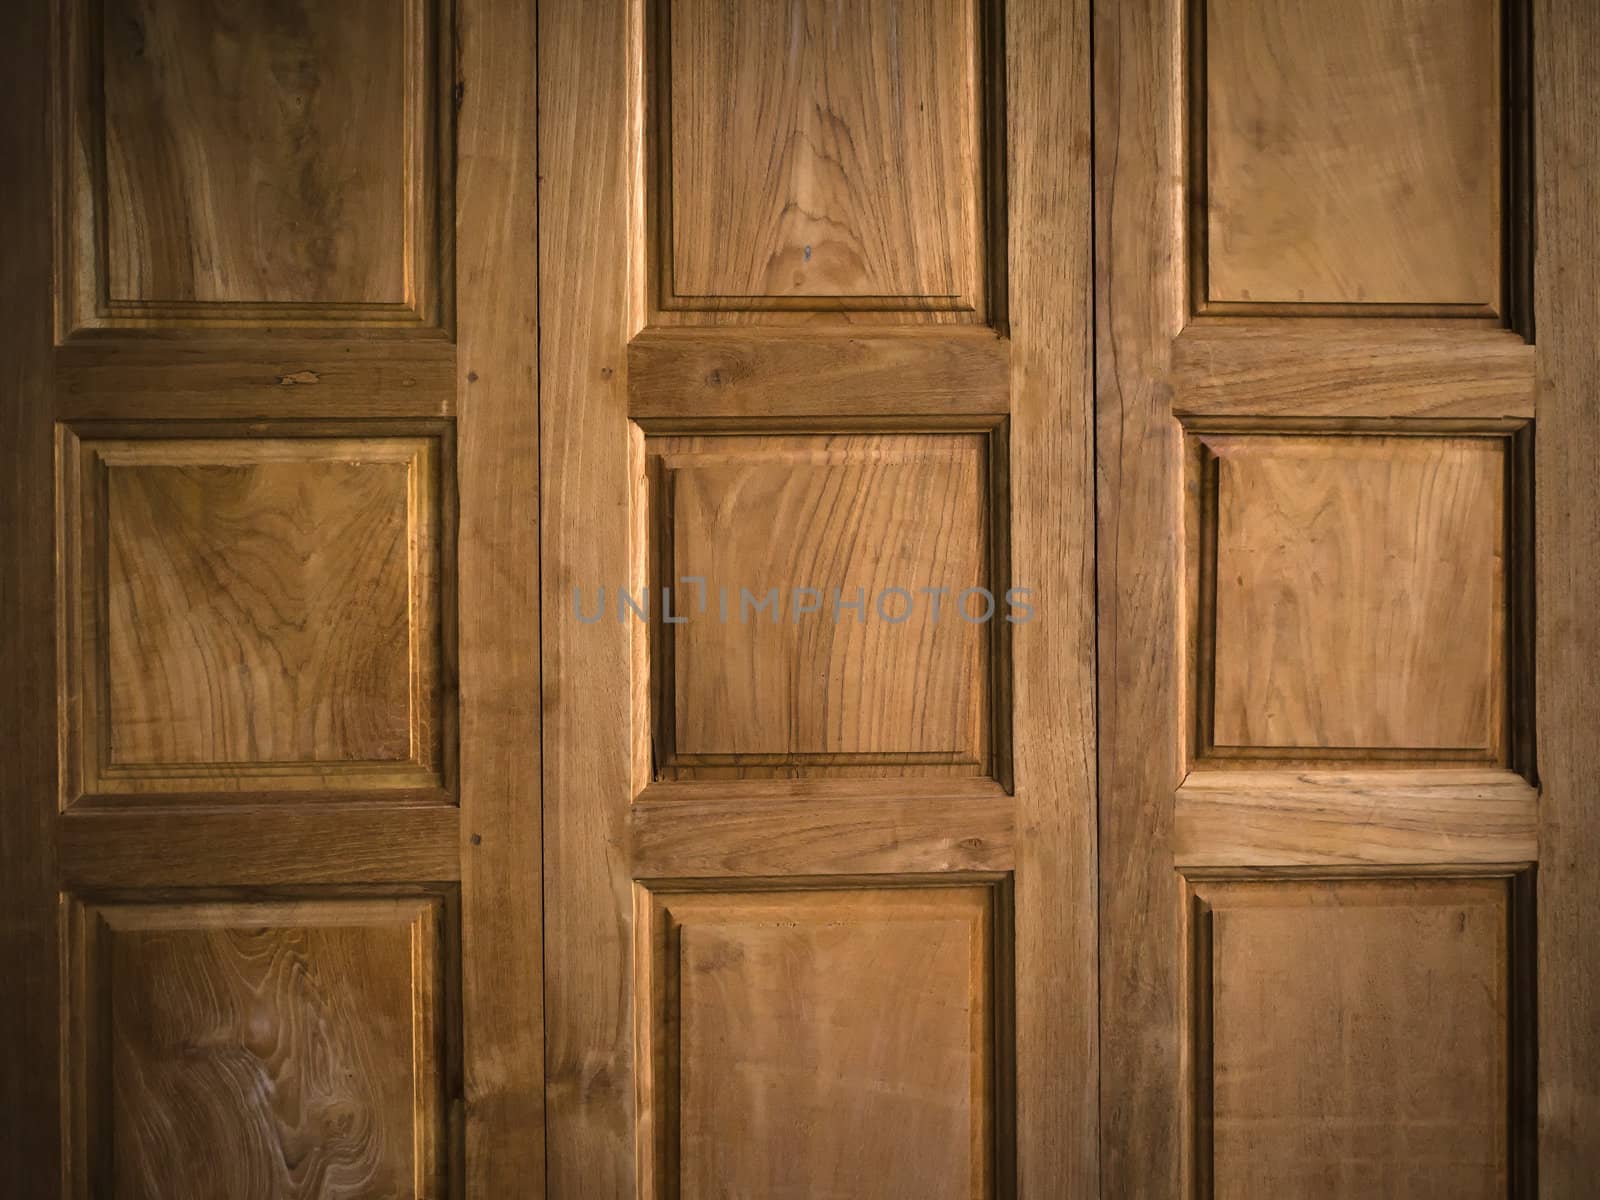 Texture of Teak wood Door for background